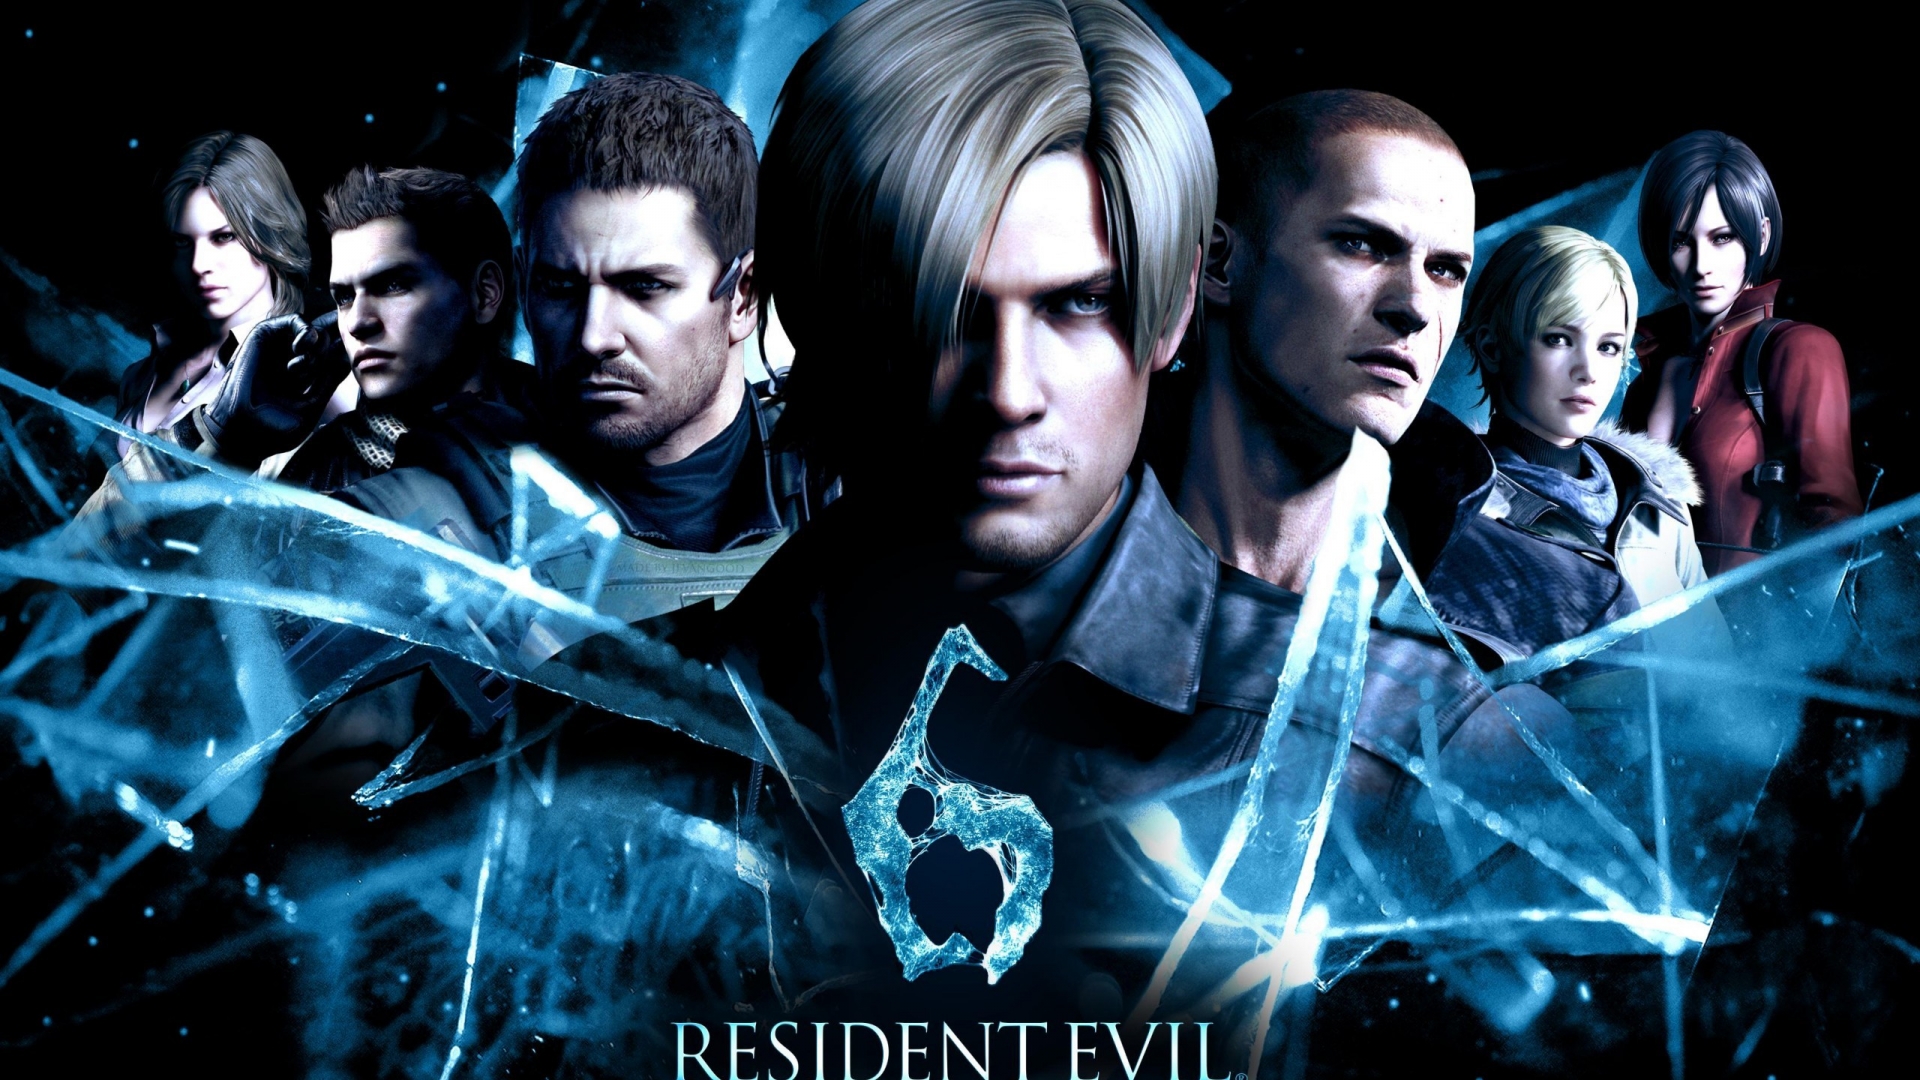 Resident Evil 6 2014 for 1920 x 1080 HDTV 1080p resolution